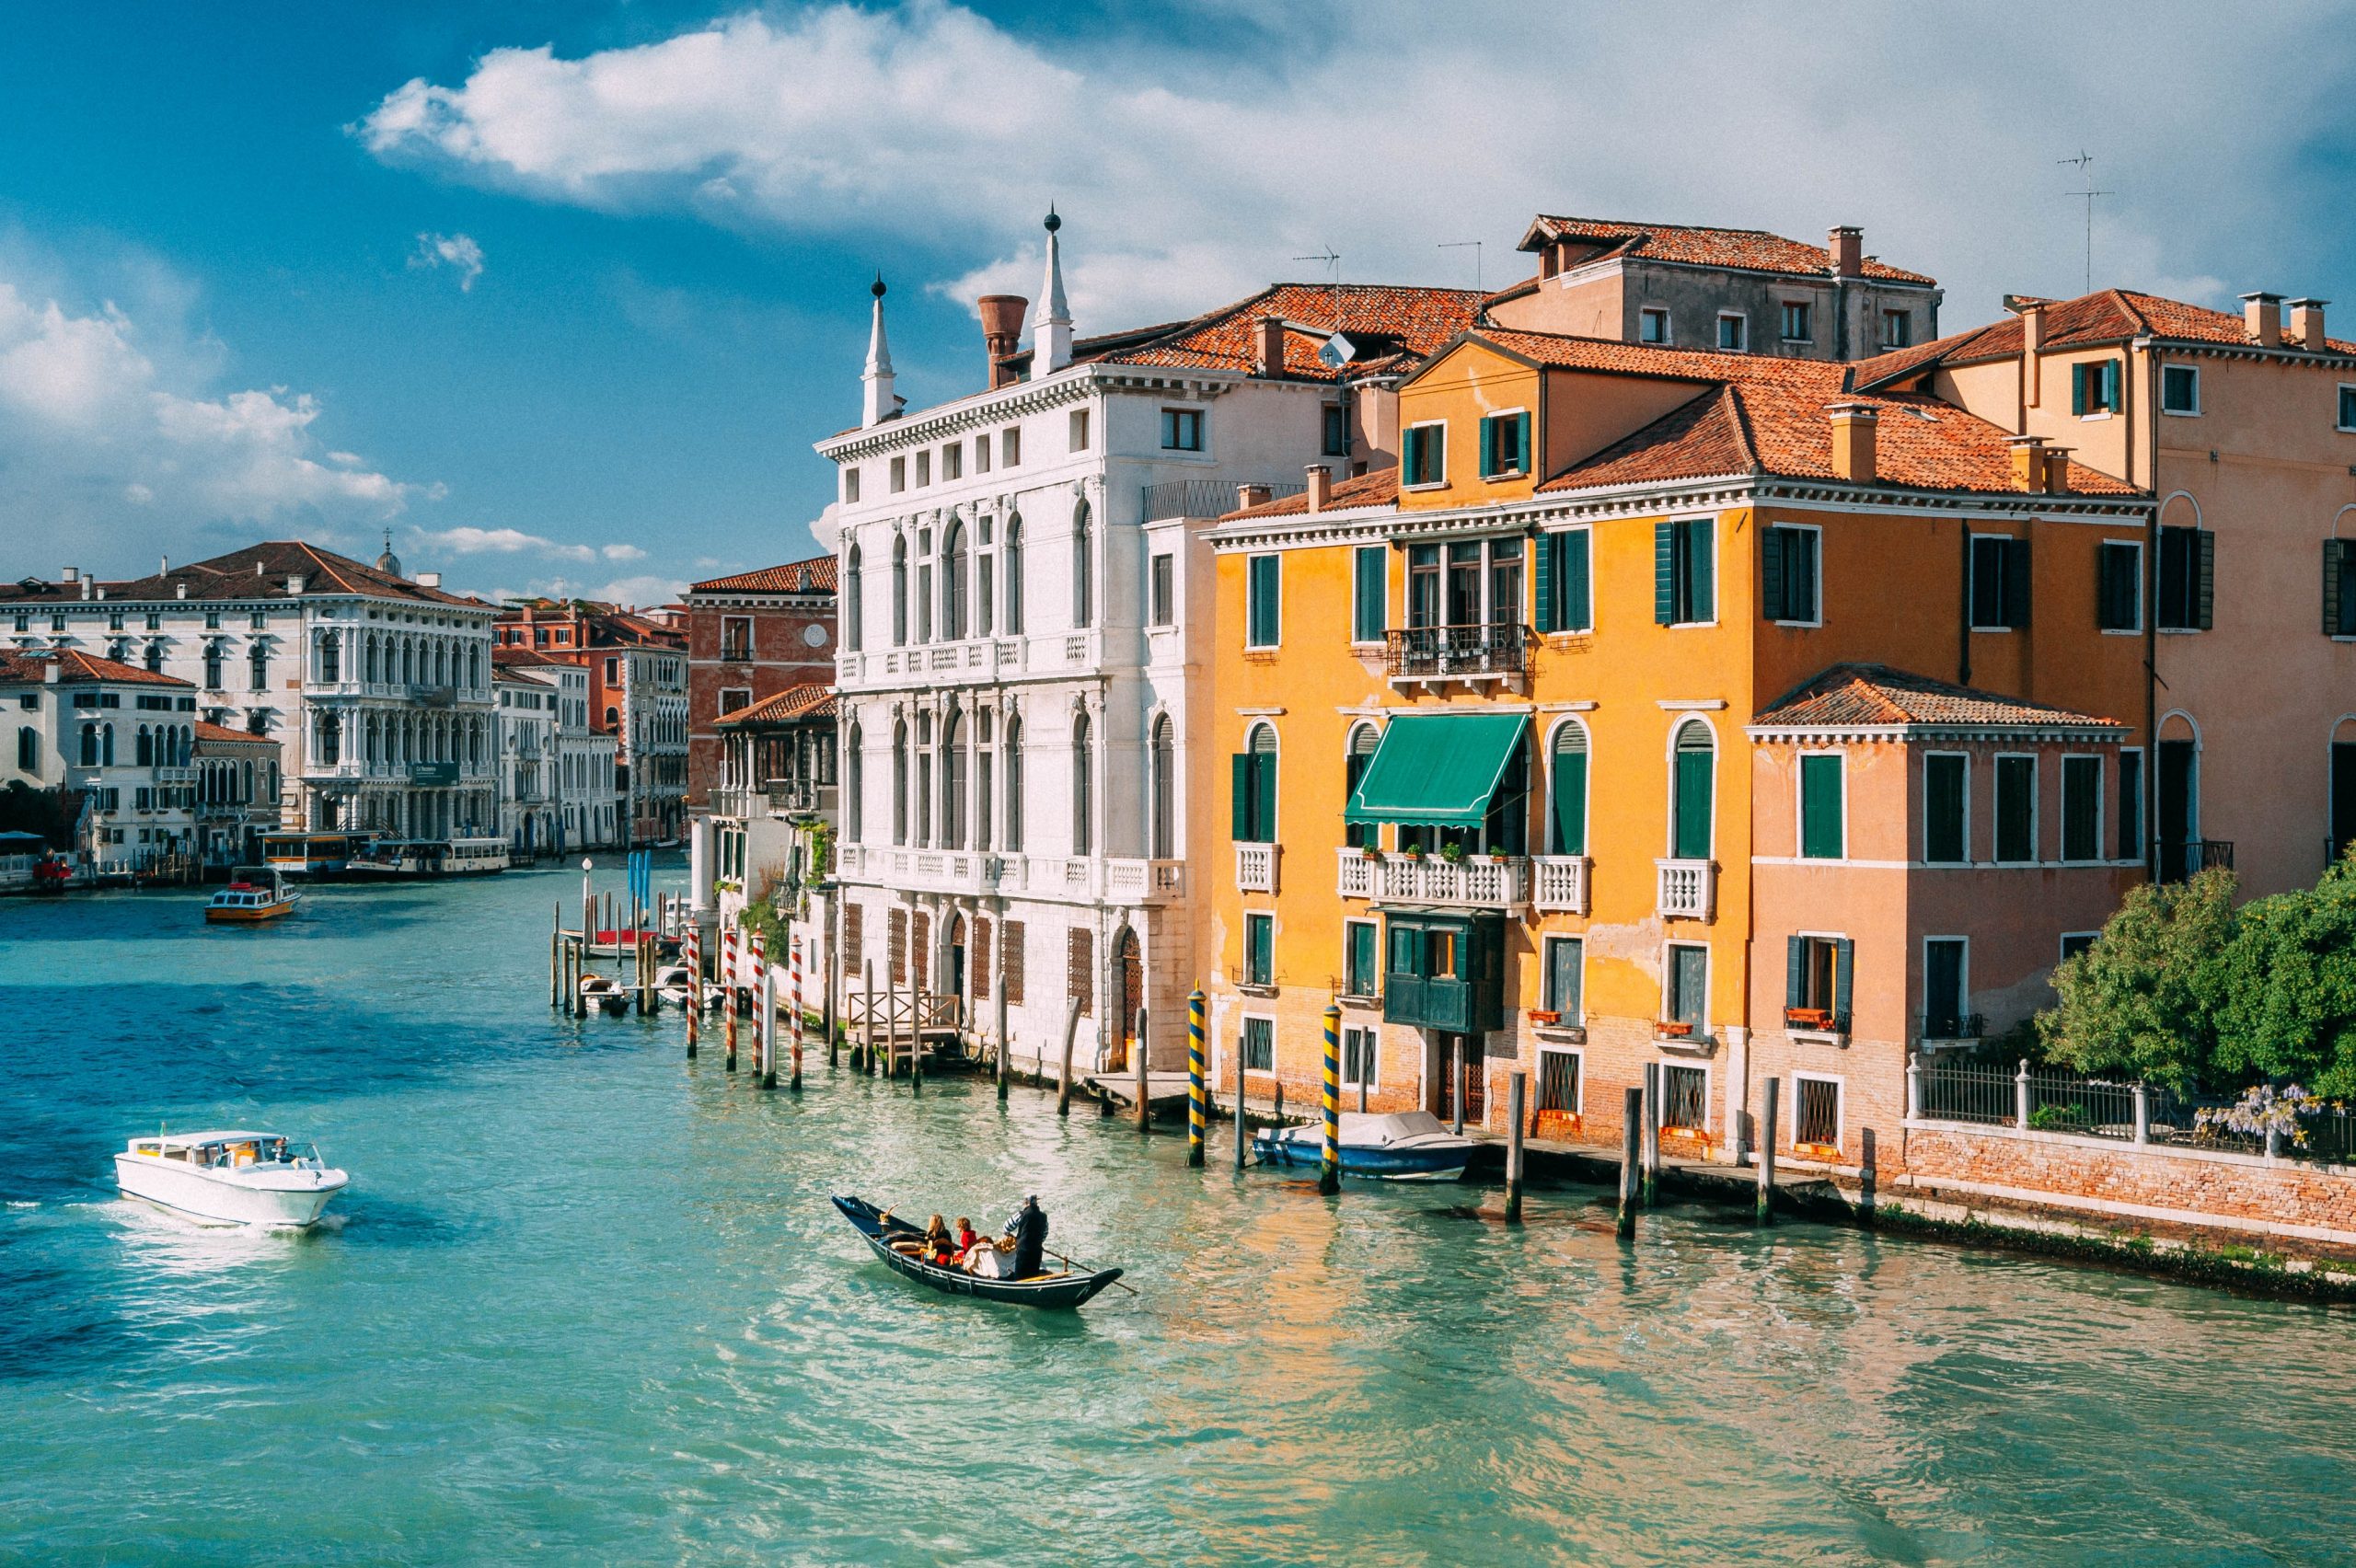 Du lịch Venice Ý từ A-Z - Kinh nghiệm không thể bỏ lỡ